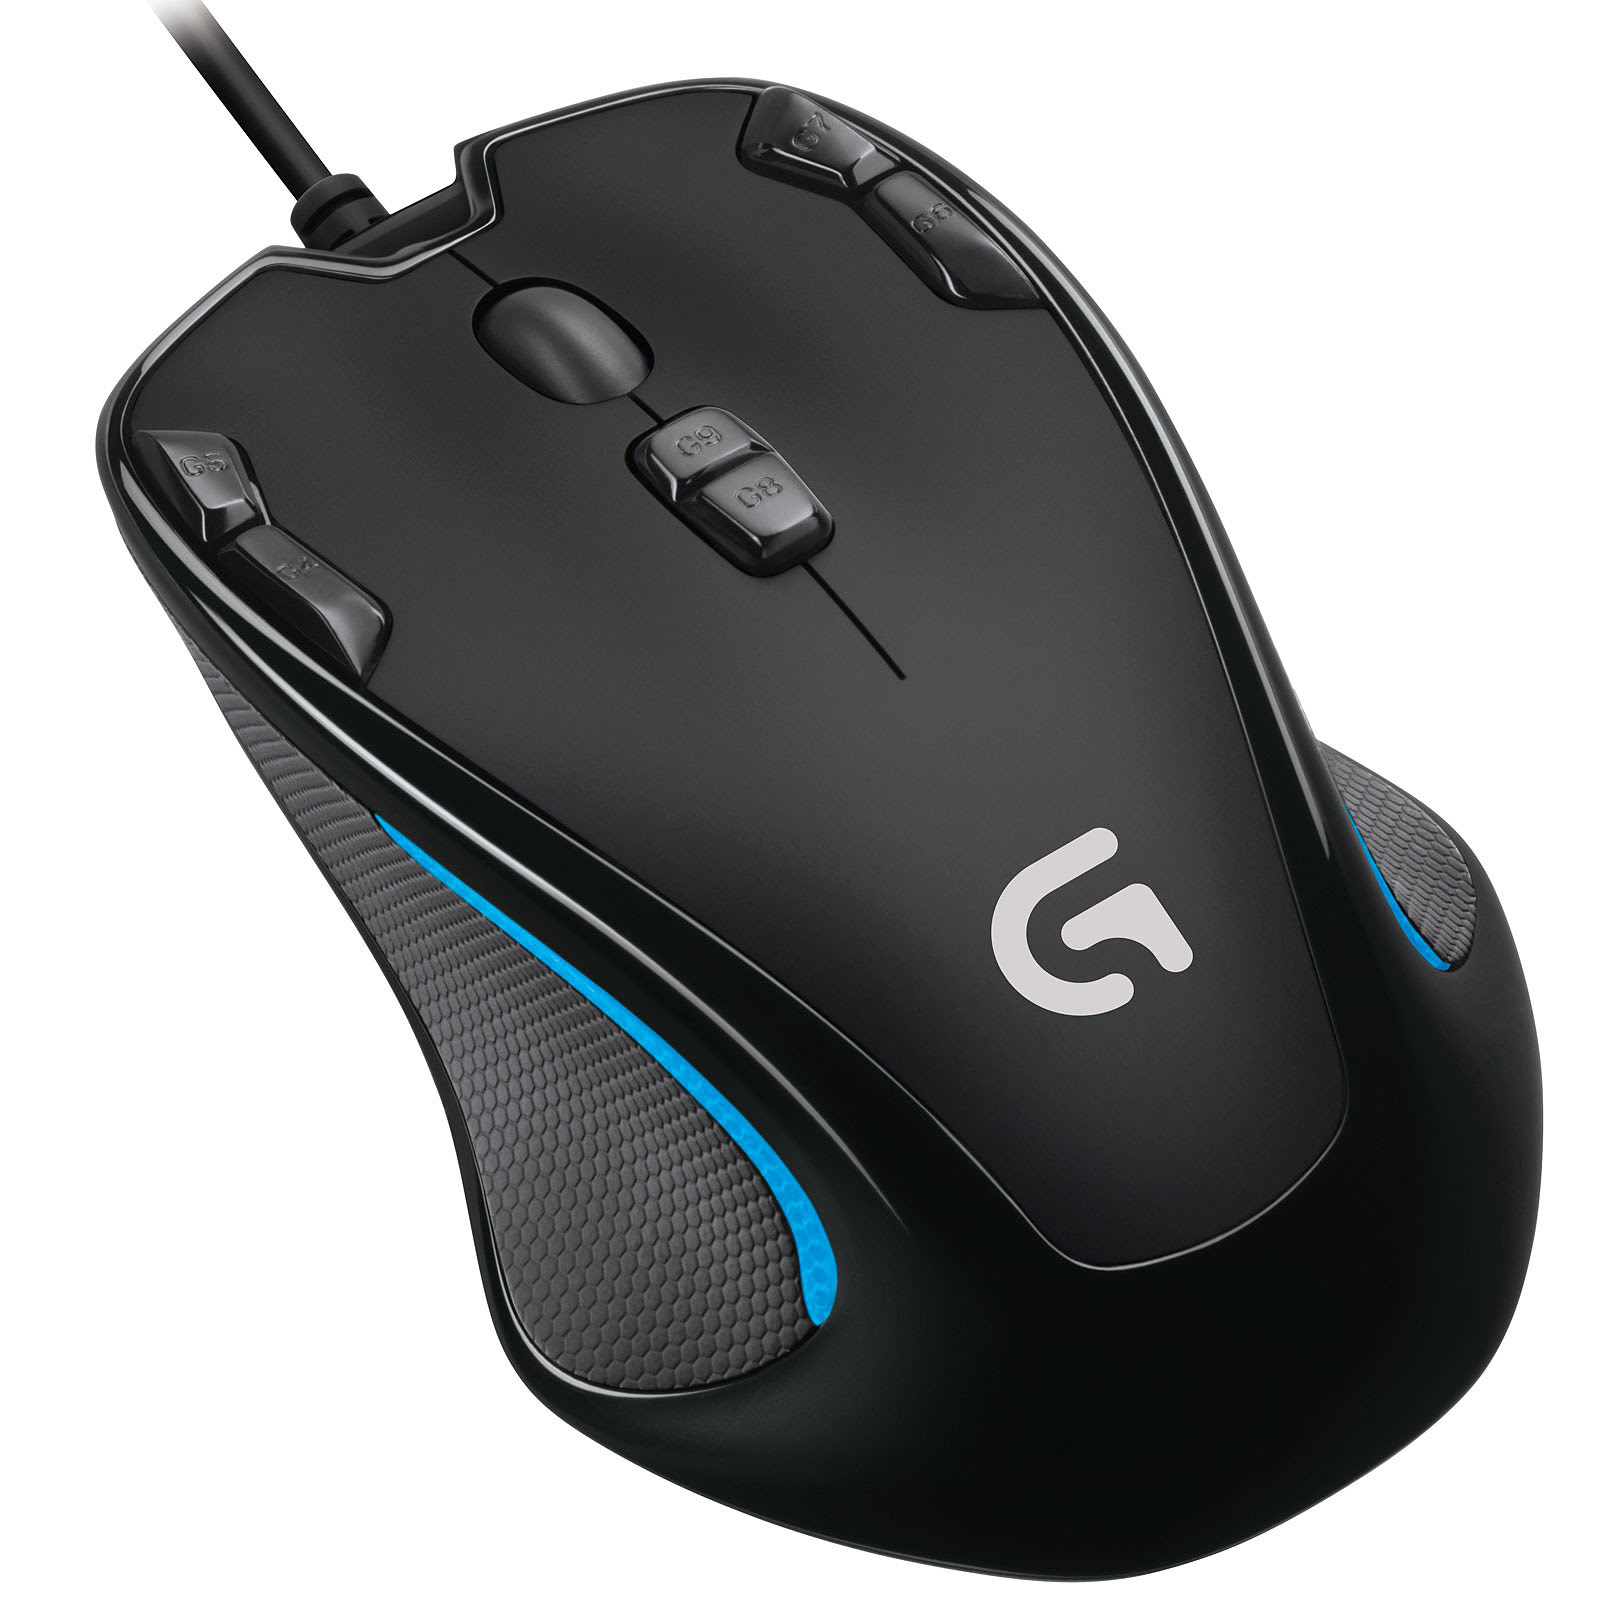  G300s Gaming Mouse (910-004346 --) - Achat / Vente Souris PC sur Picata.fr - 1